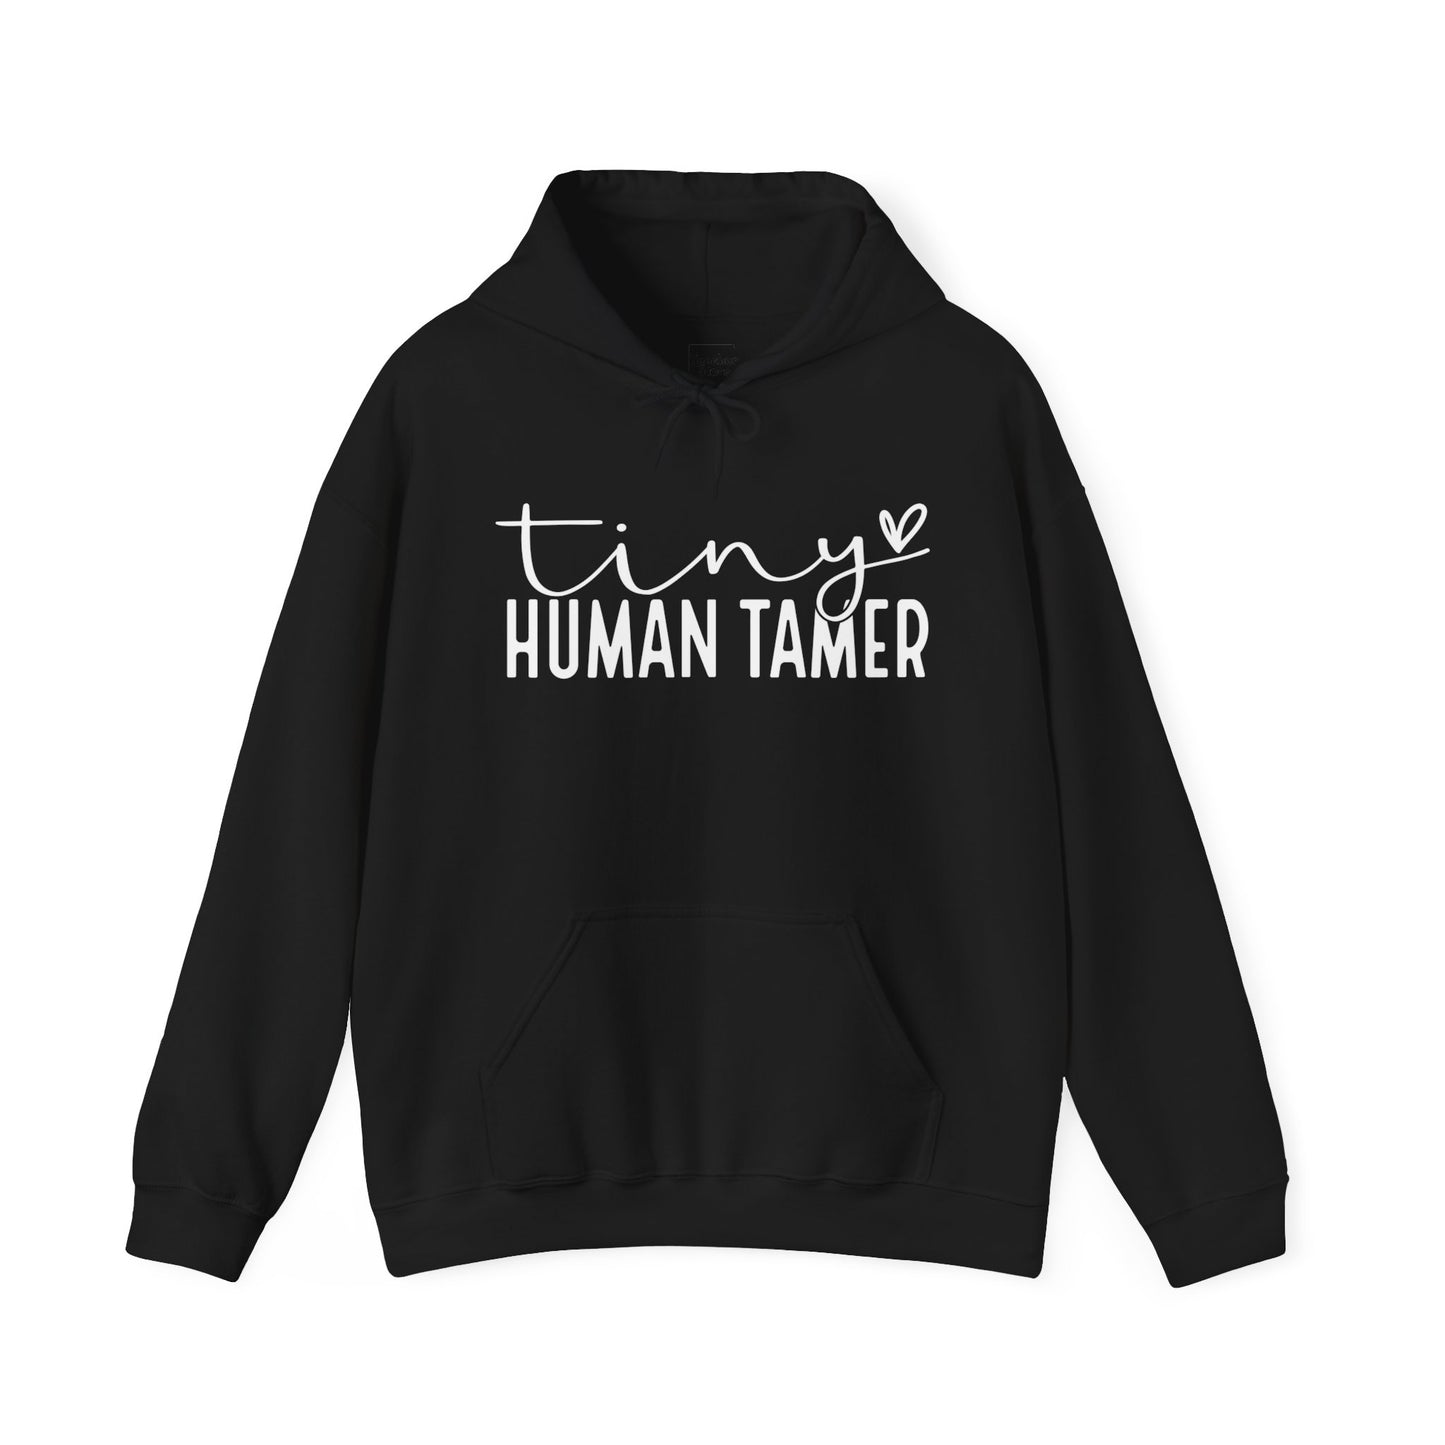 Human Tamer Hooded Sweatshirt